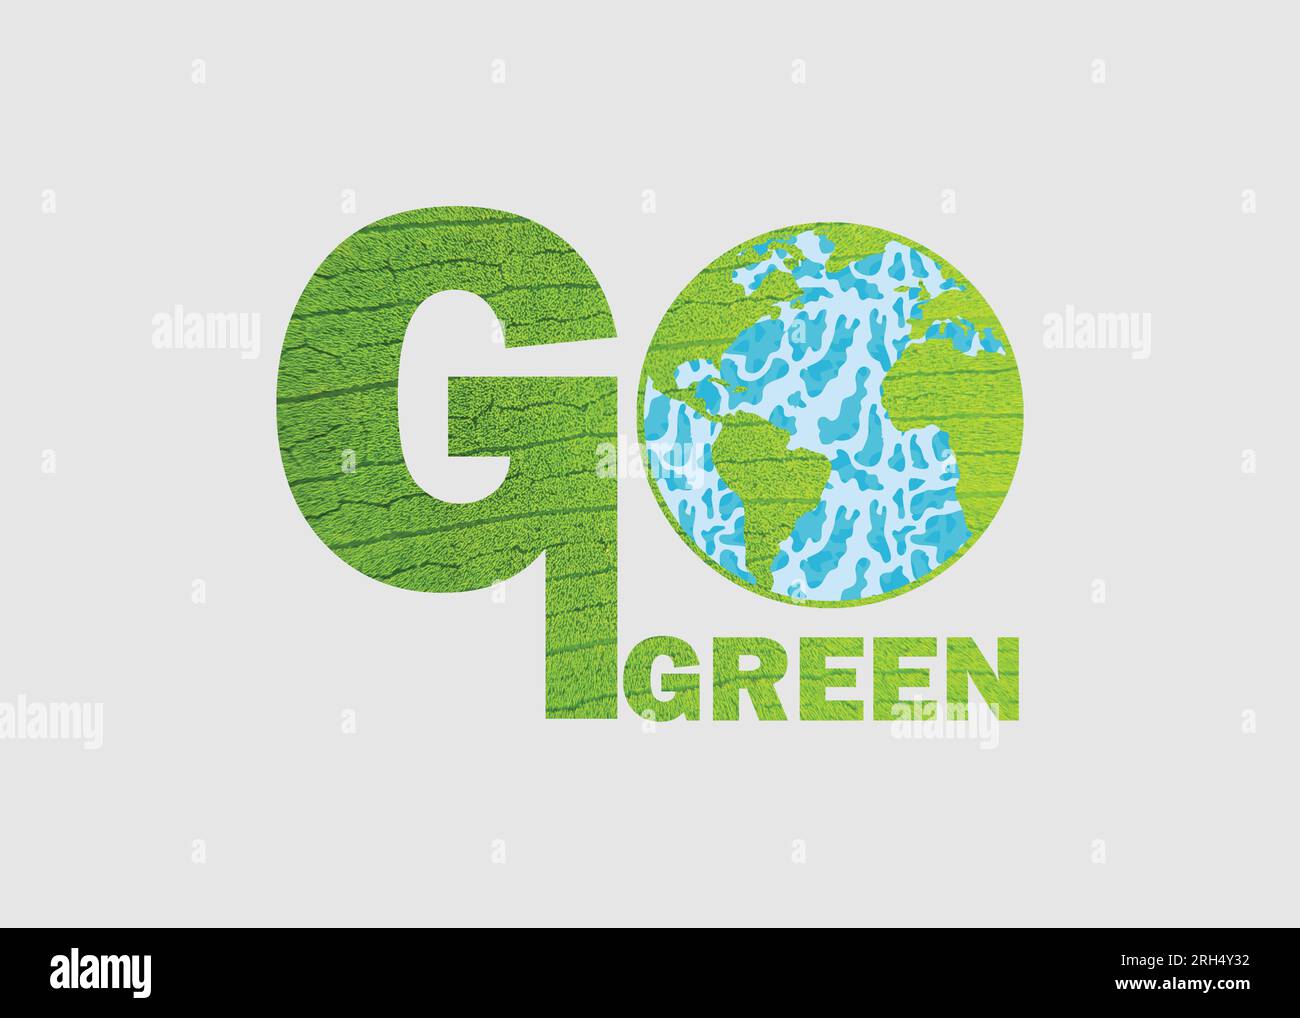 GRÜNES Konzept mit grünem Blatt. Grüne Weltkarte - grüne Blattform der Weltkarte isoliert auf weißem Hintergrund. Weltkarte Grüner Planet Erde Stock Vektor